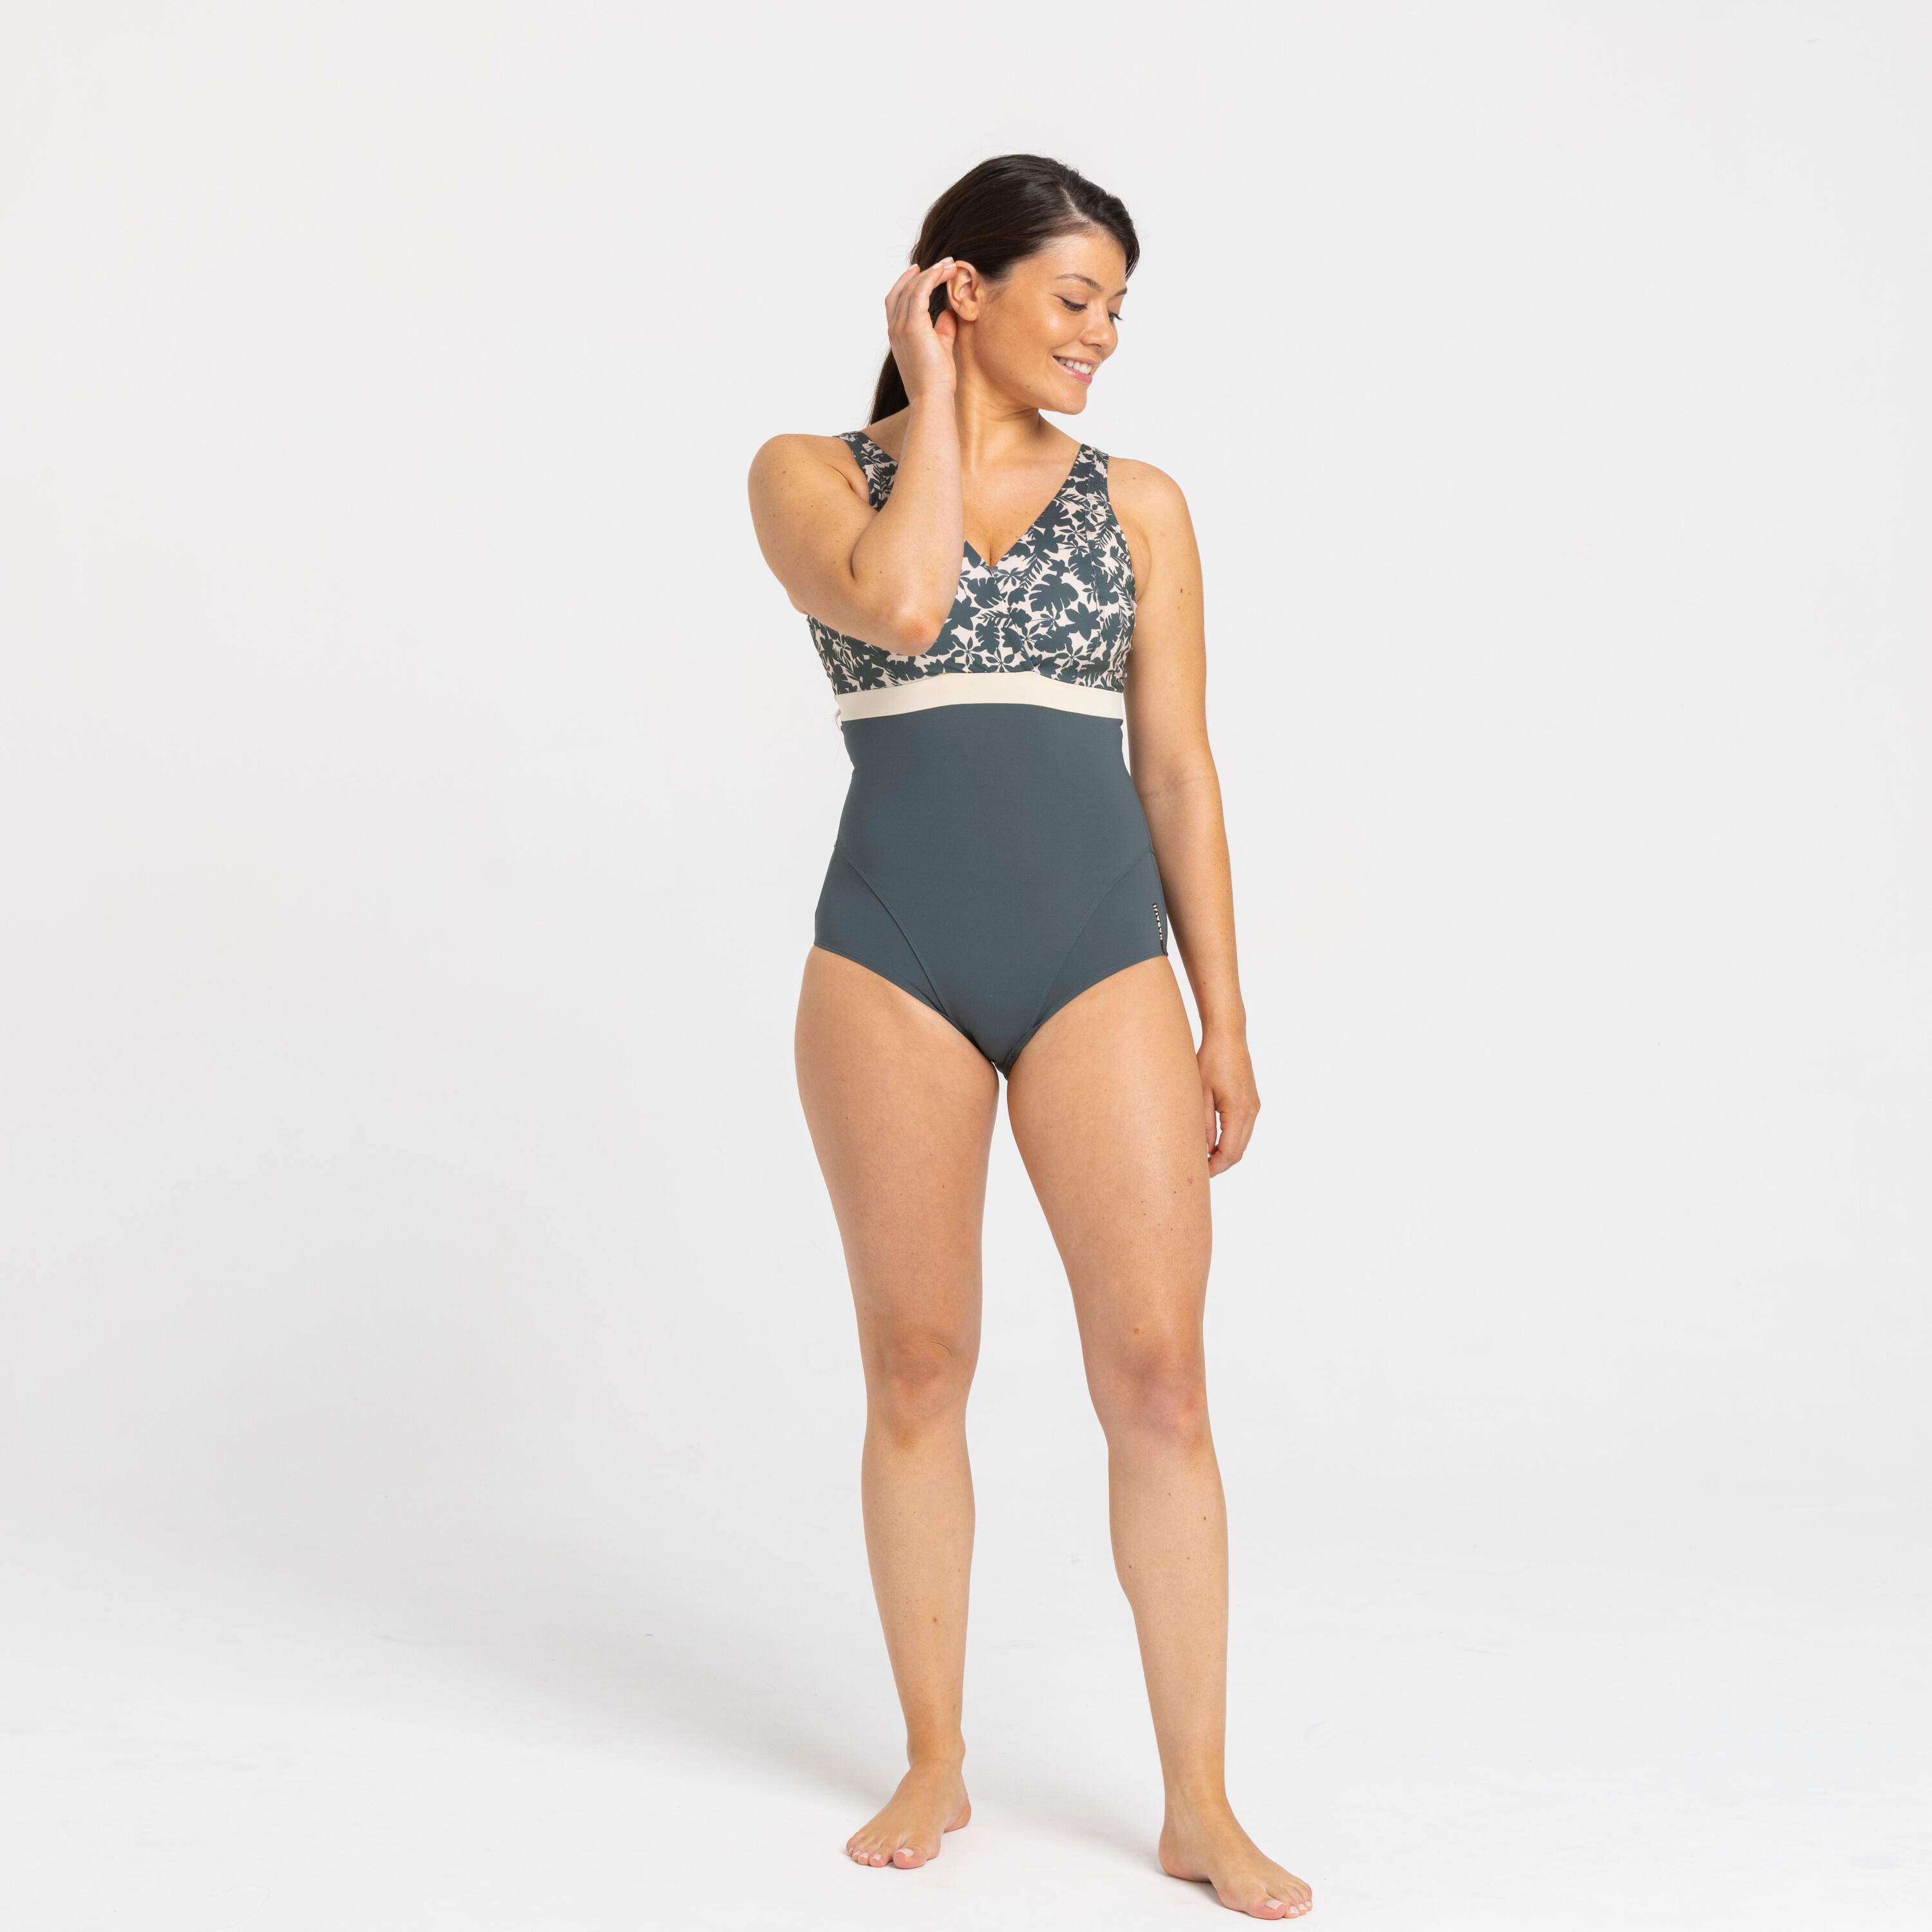 Women's 1-piece Swimsuit Mia Palm Beige Khaki Cup size D/E 6/6